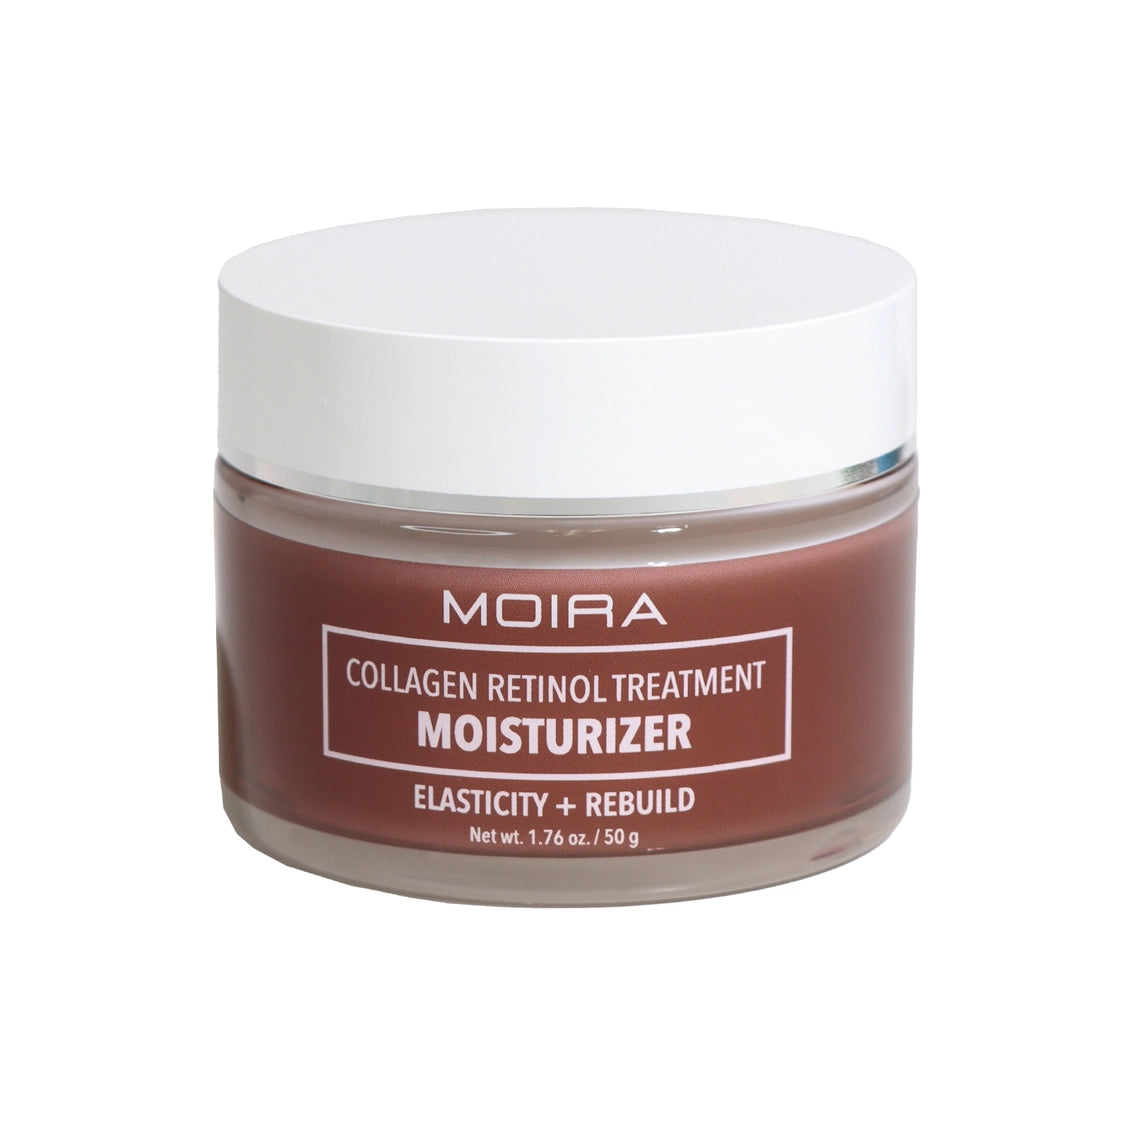 MOIRA Collagen Retinol Treatment Moisturizer